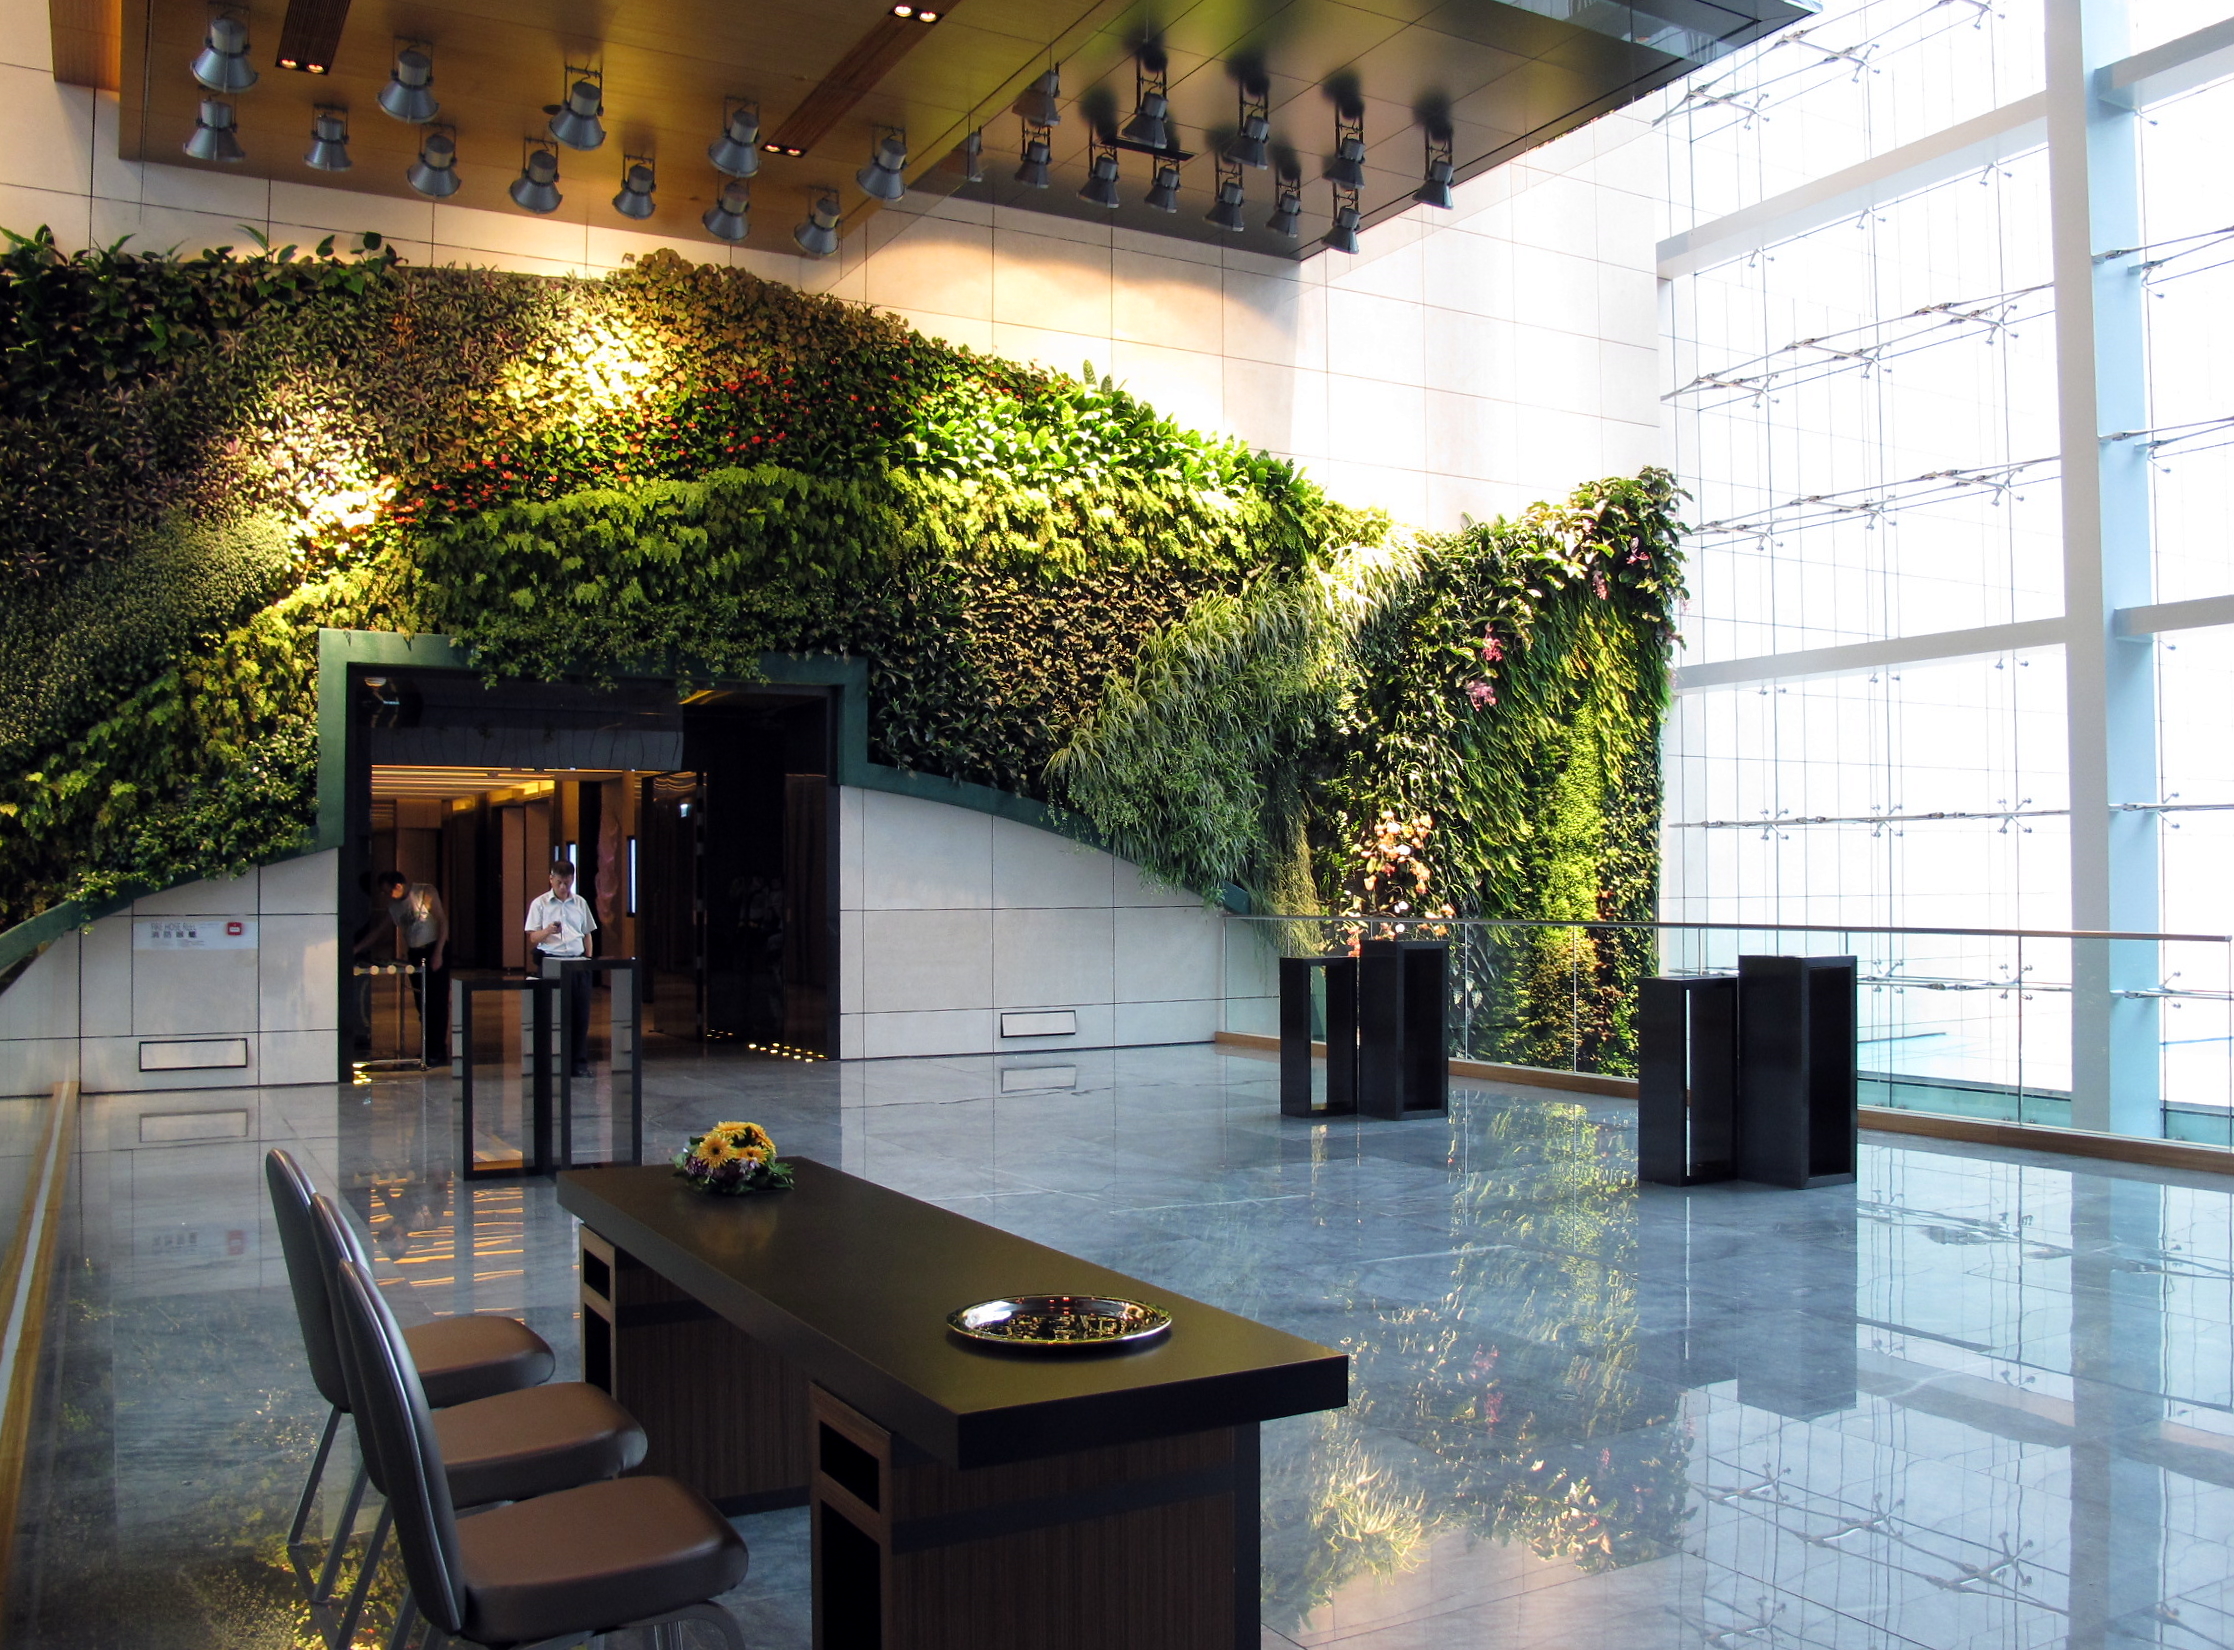 باغ های داخل سالنی و طراحی پاسیوها به تدریج در حال تبدیل شدن به یکی از محبوب ترین ترندهای طراحی داخلی هتل ها